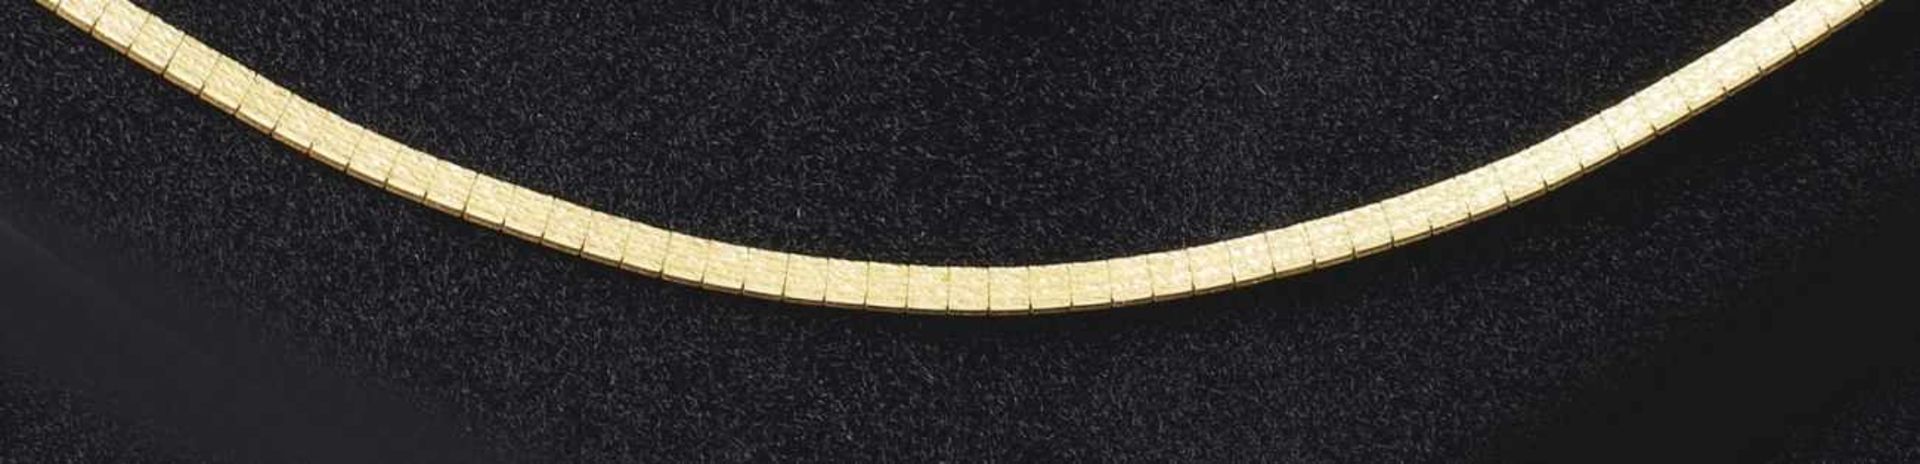 GoldcollierVicenza, 2. H. 20. Jh.Umlaufende Rechteckglieder mit Rindendekor, Kastenschloss. Gold